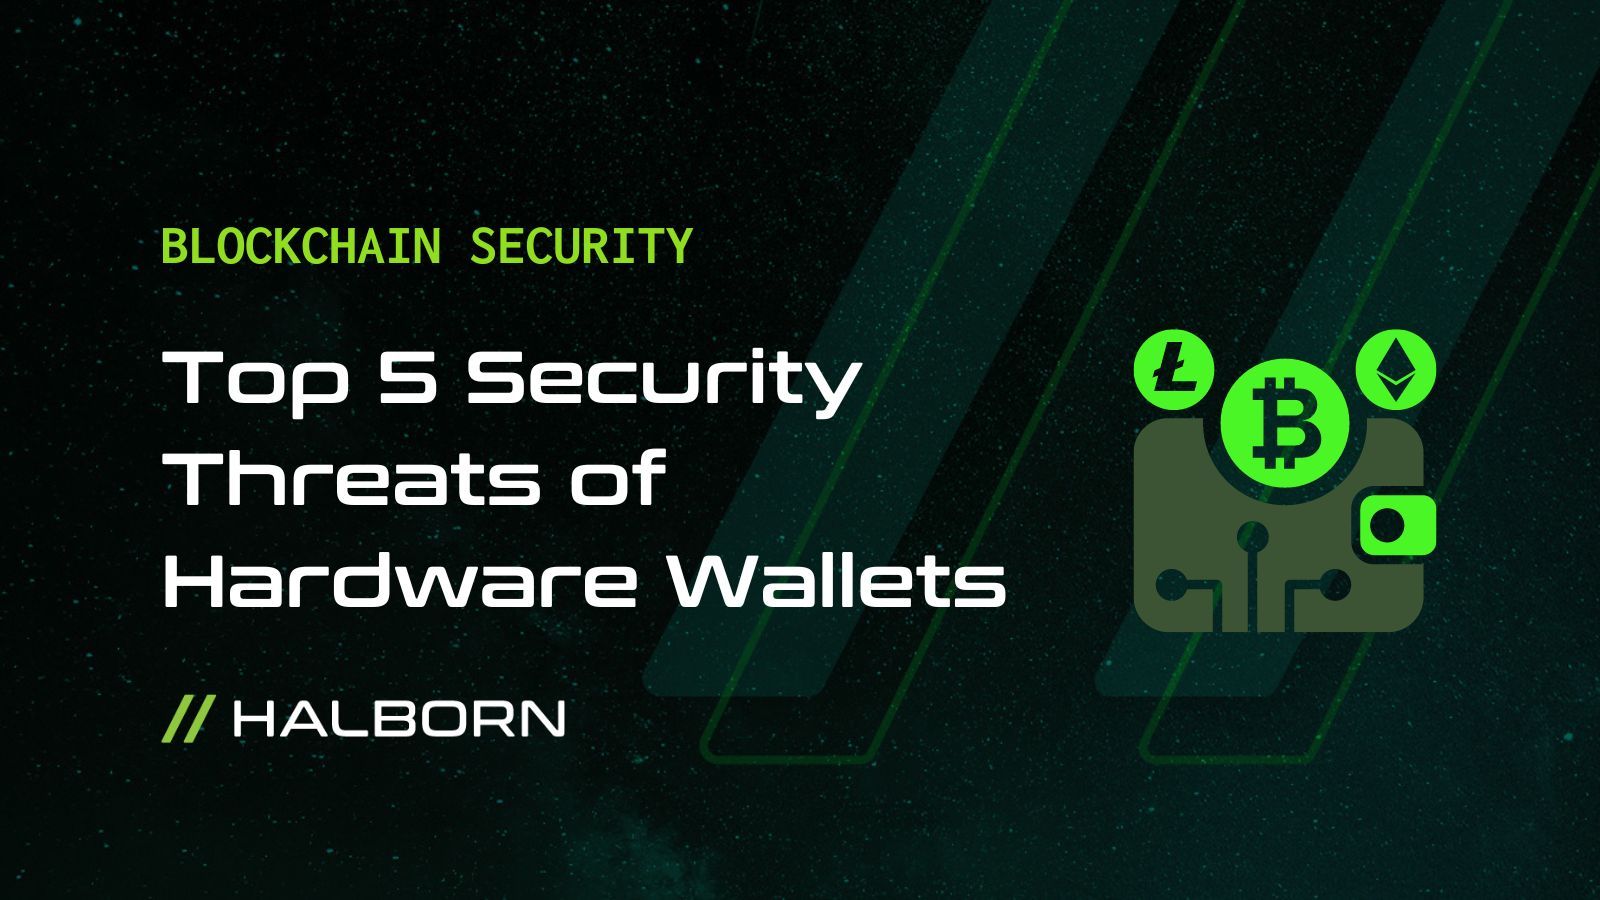 Hardware wallet security risks